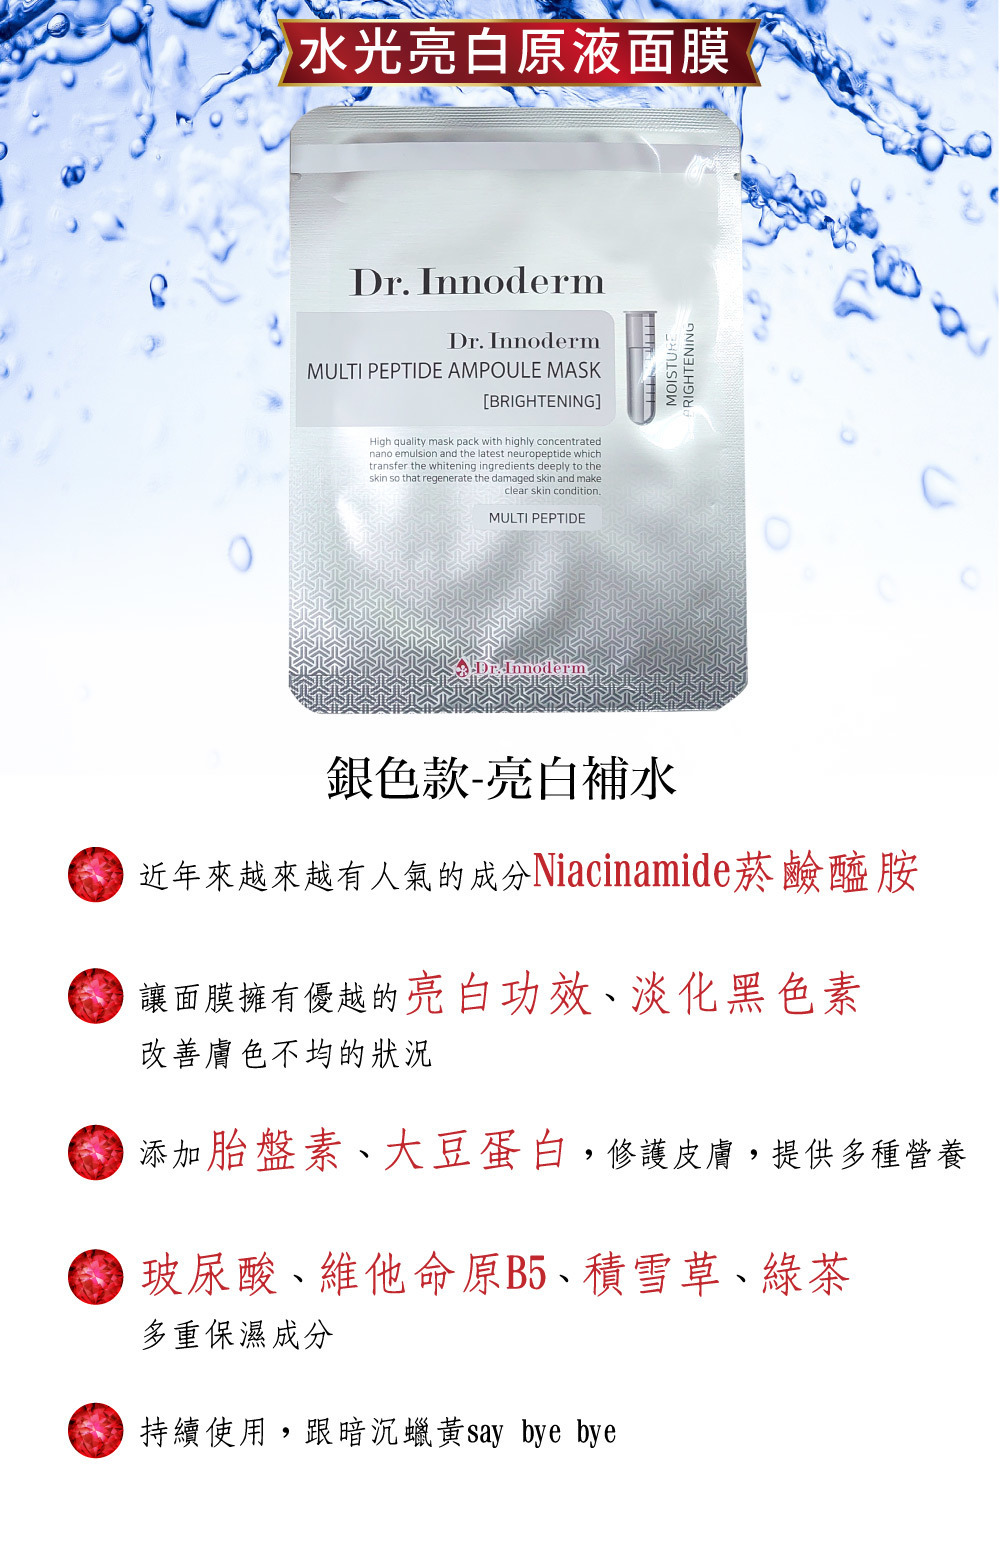 韓國【Dr. Innoderm】原裝進口醫美用水光修復抗皺面膜(抗皺金)(保濕藍)